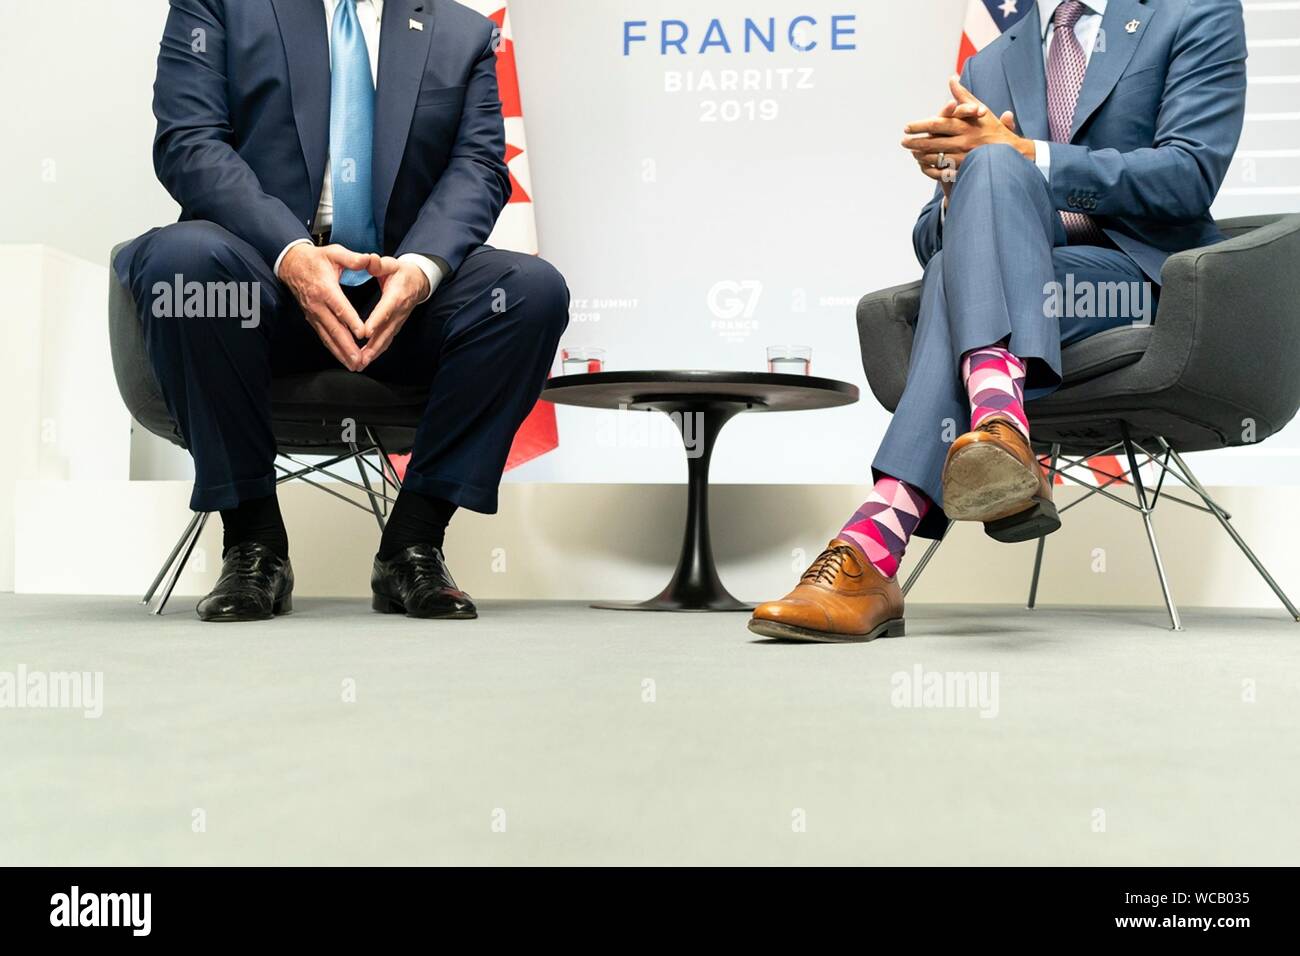 contraste en estilo mostrando los coloridos calcetines gastados por el Primer Ministro canadiense Justin Trudeau, derecha y aquellos usados por el Presidente de Estados Unidos, Donald Trump, antes de su reunión